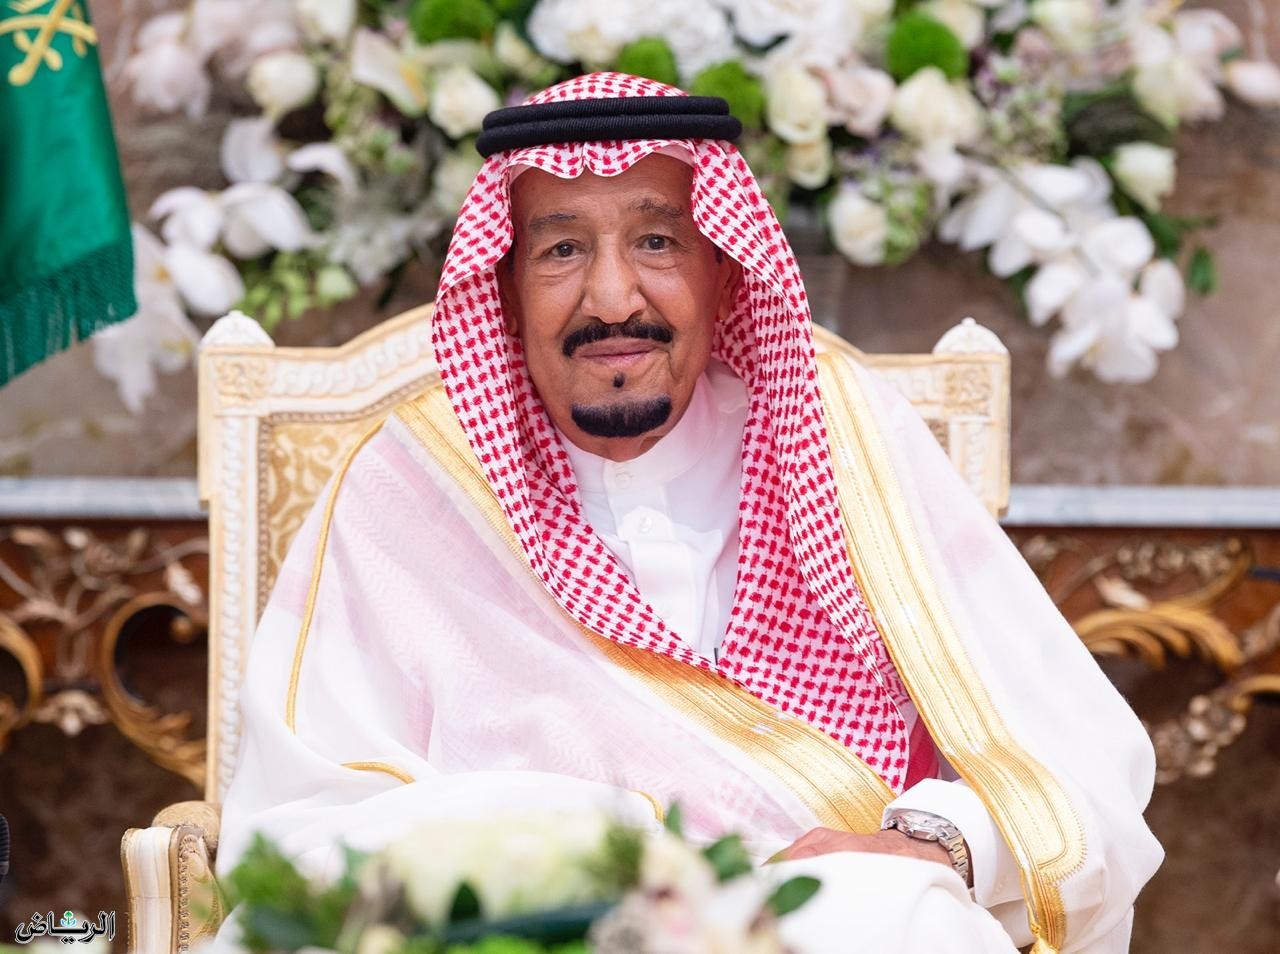 الديوان الملكي السعودي يصدر بيان ملكي يكشف فيه حالة الملك سلمان بن عبدالعزيز وجاء فيه